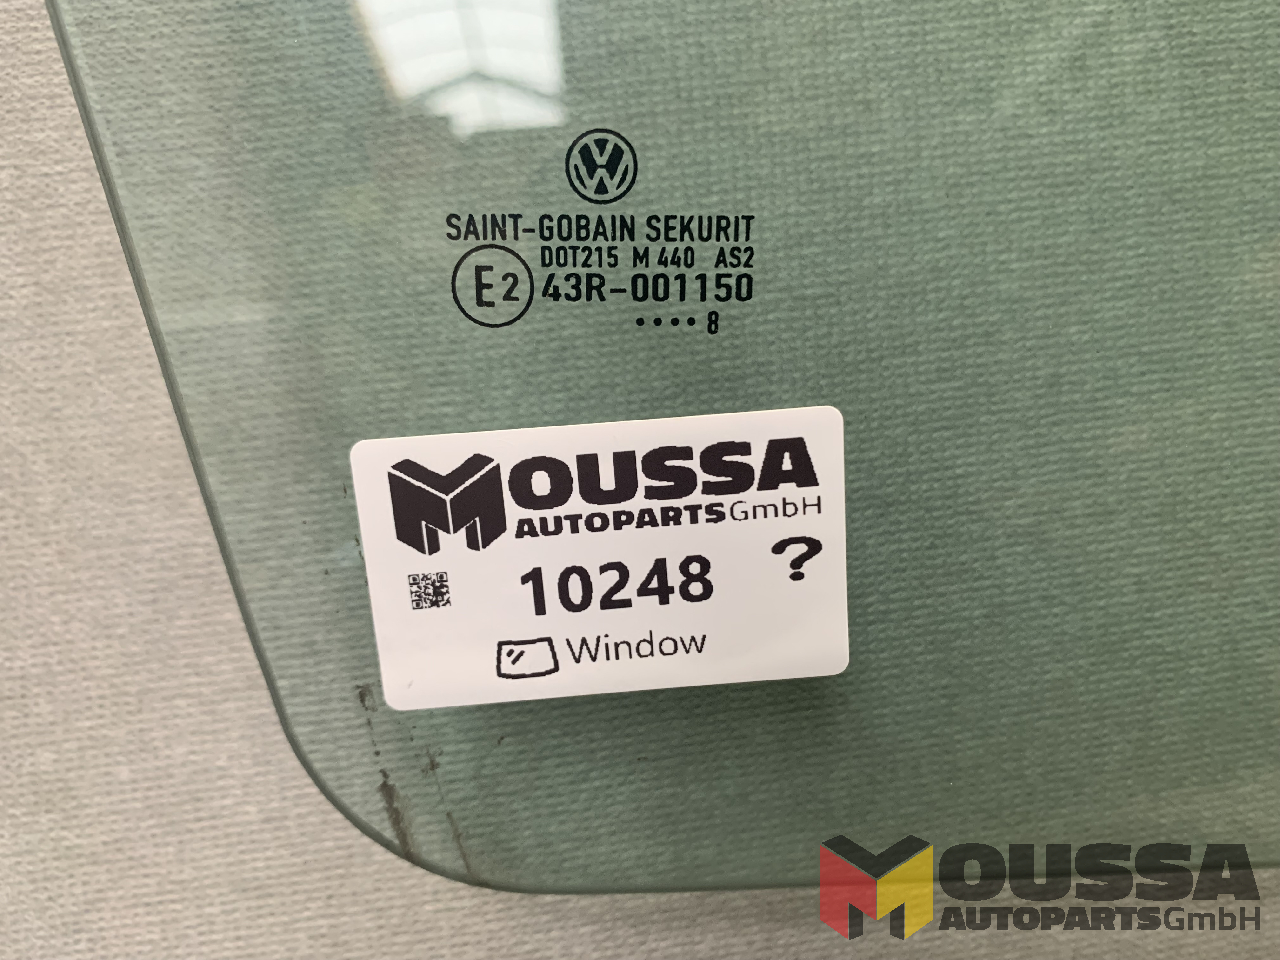 MOUSSA-AUTOPARTS-64921db935ea0.jpg